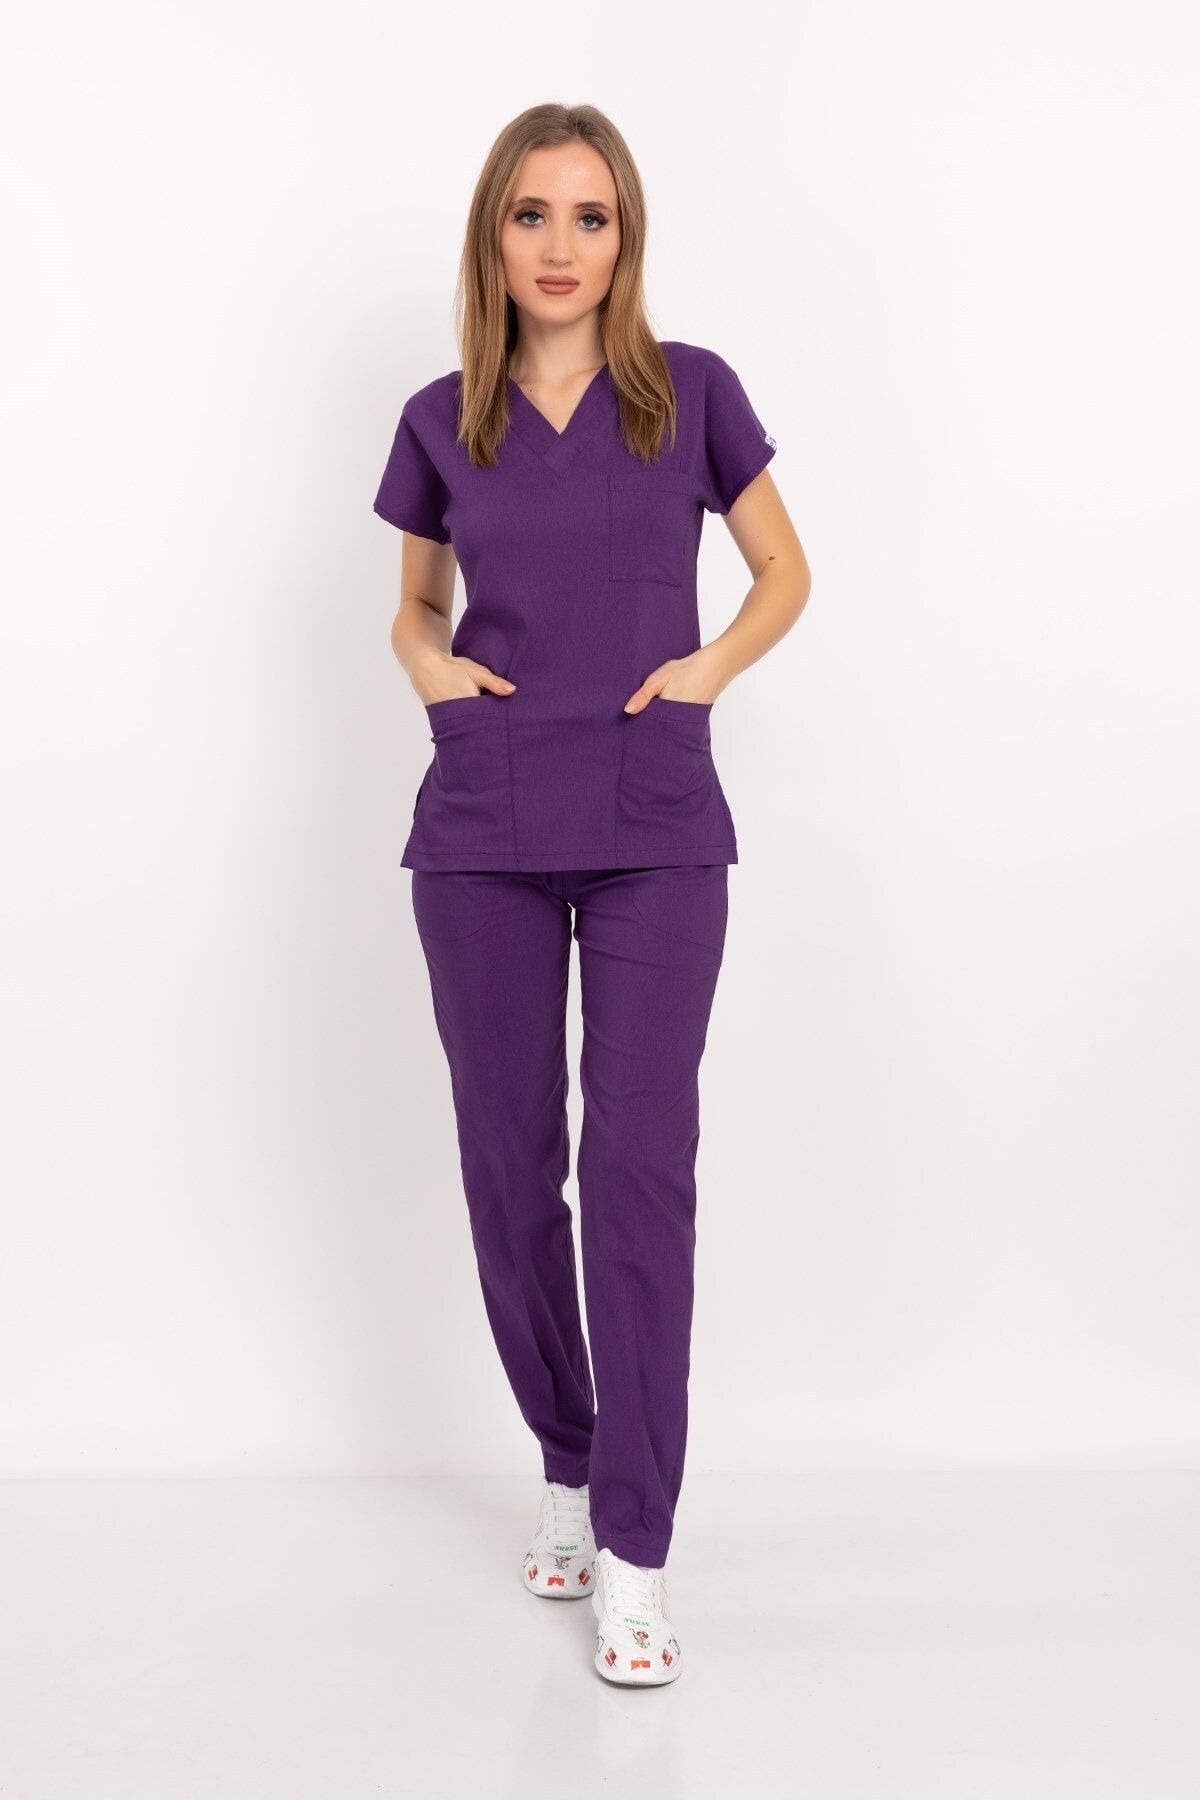 Nur Medikal Giyim Unisex Kadın Erkek Mor Renk Likralı Doktor Hemşire Hastane Scrubs Üniforma Takımı